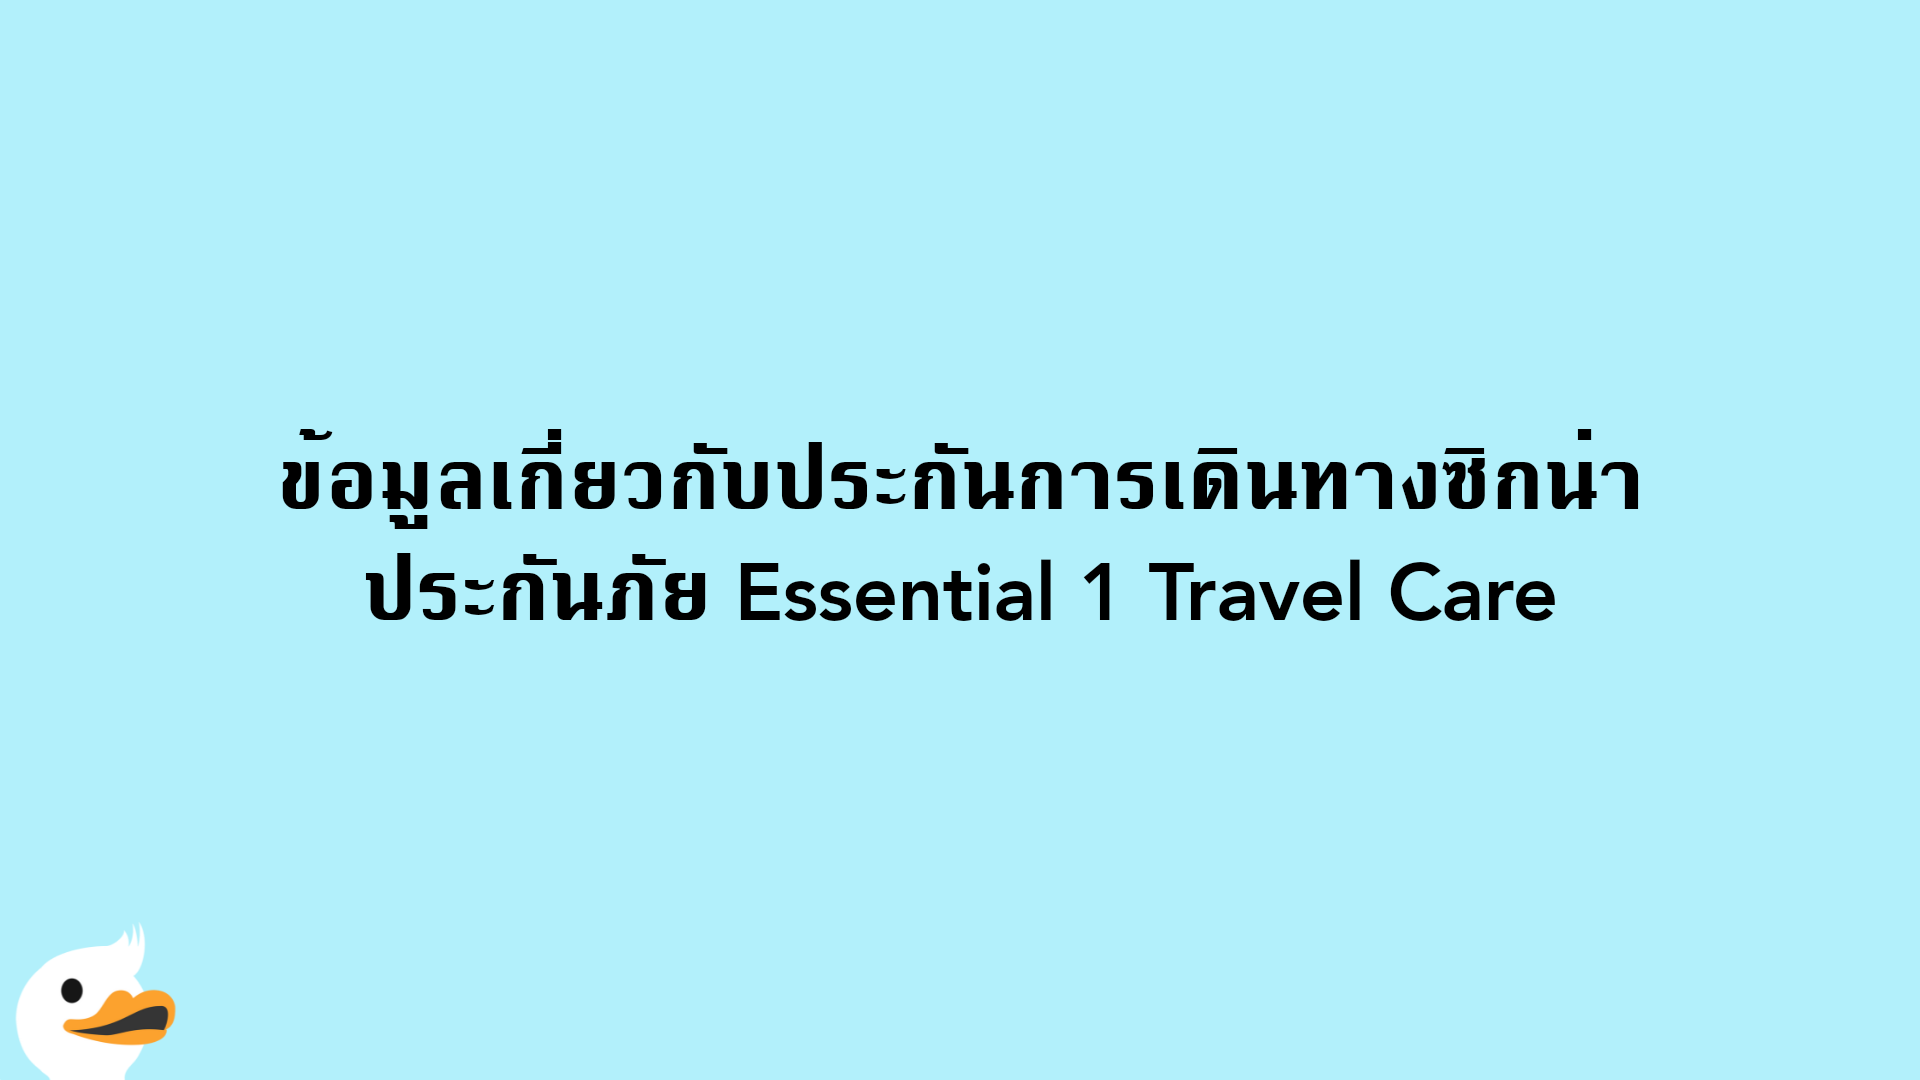 ข้อมูลเกี่ยวกับประกันการเดินทางซิกน่า ประกันภัย Essential 1 Travel Care